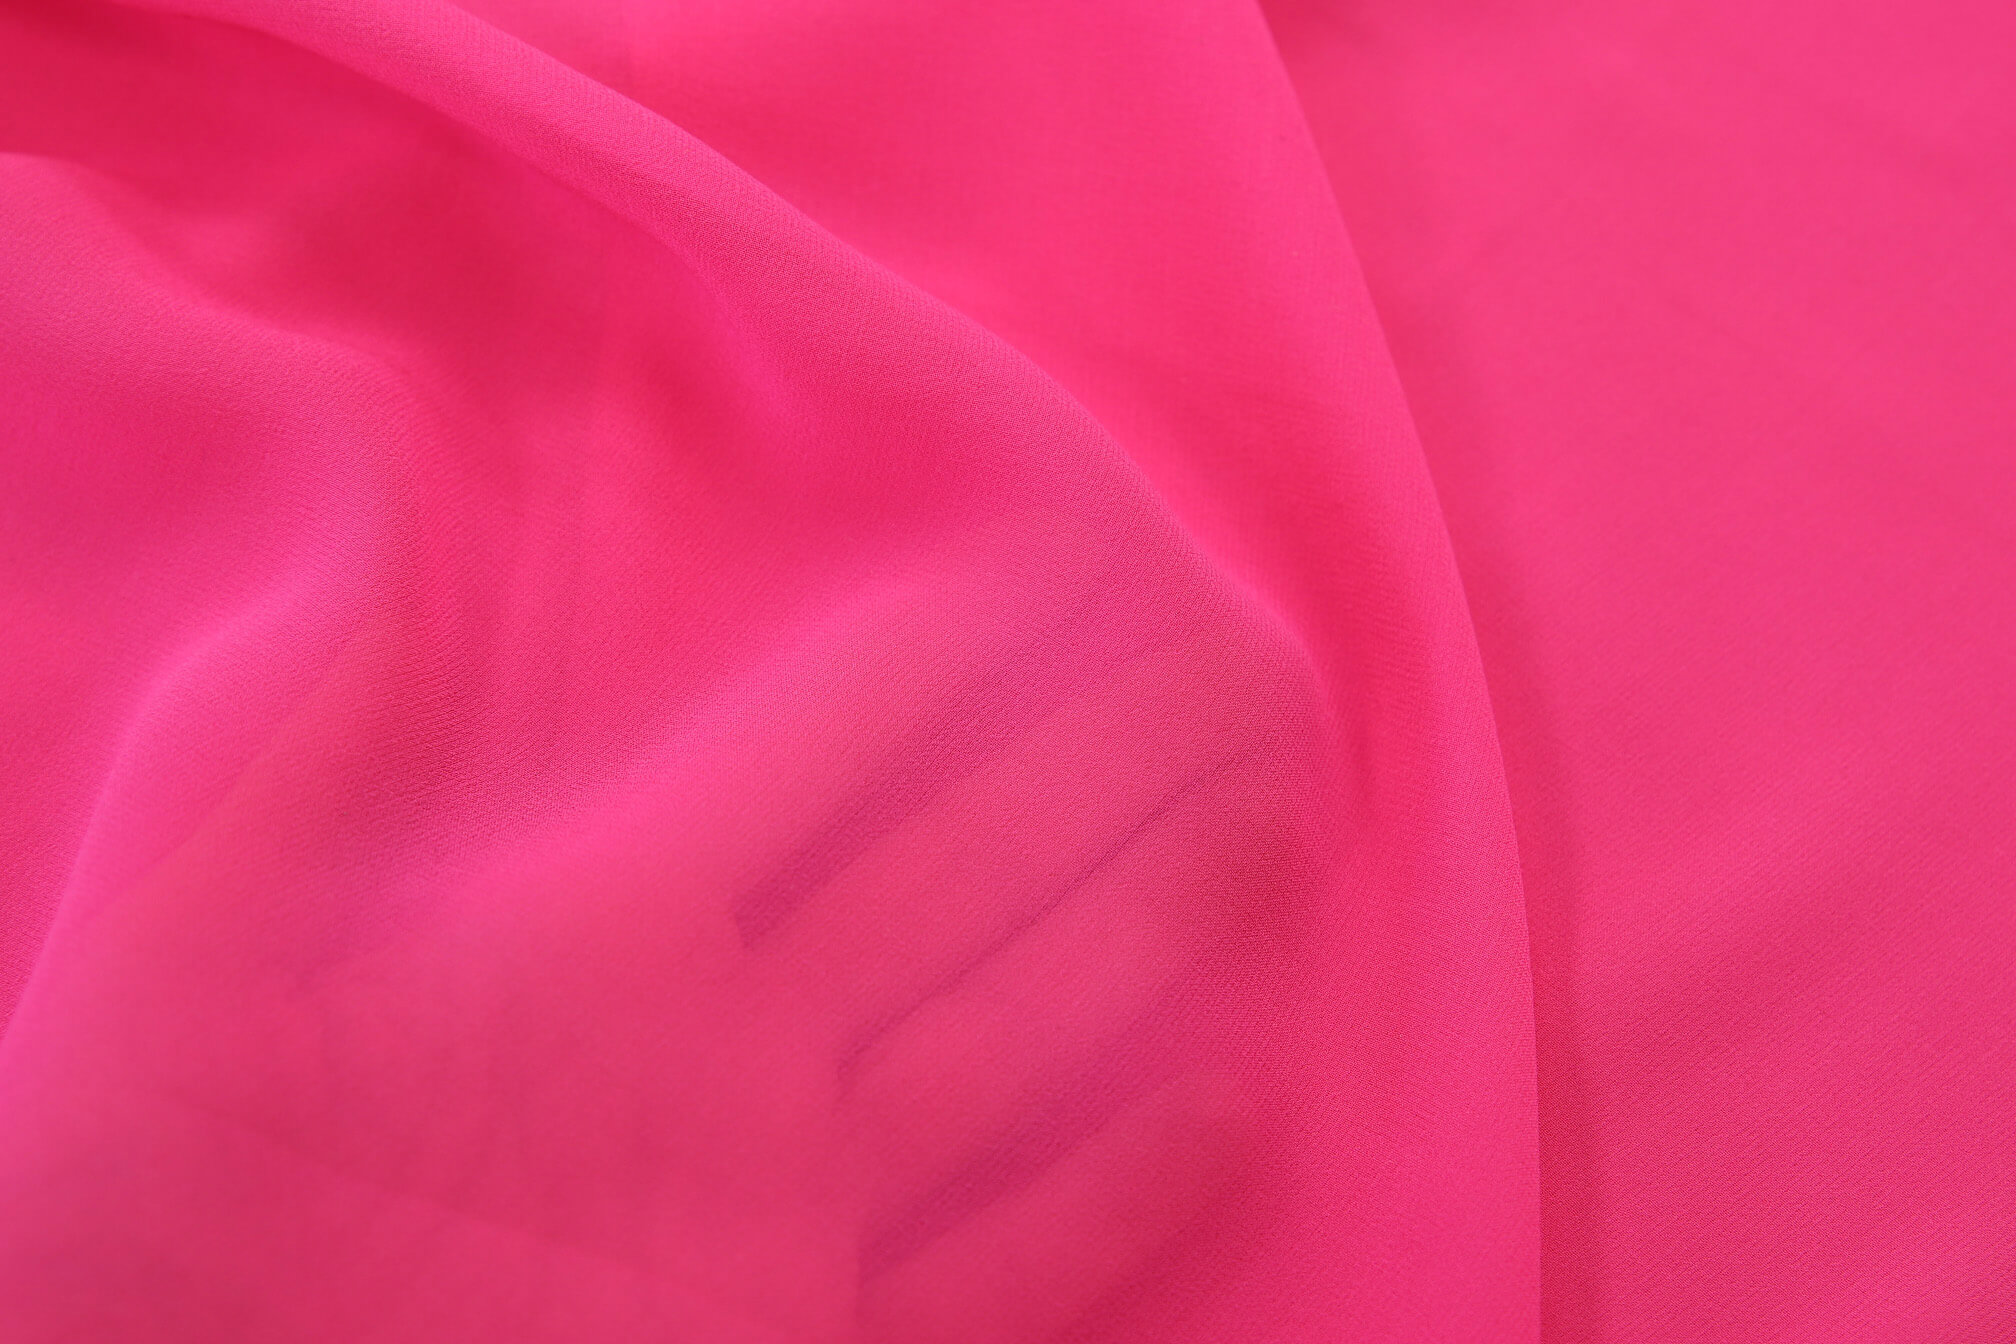 Шелковый креп-шифон Giambattista Valli, цвет Розовый, фото 1